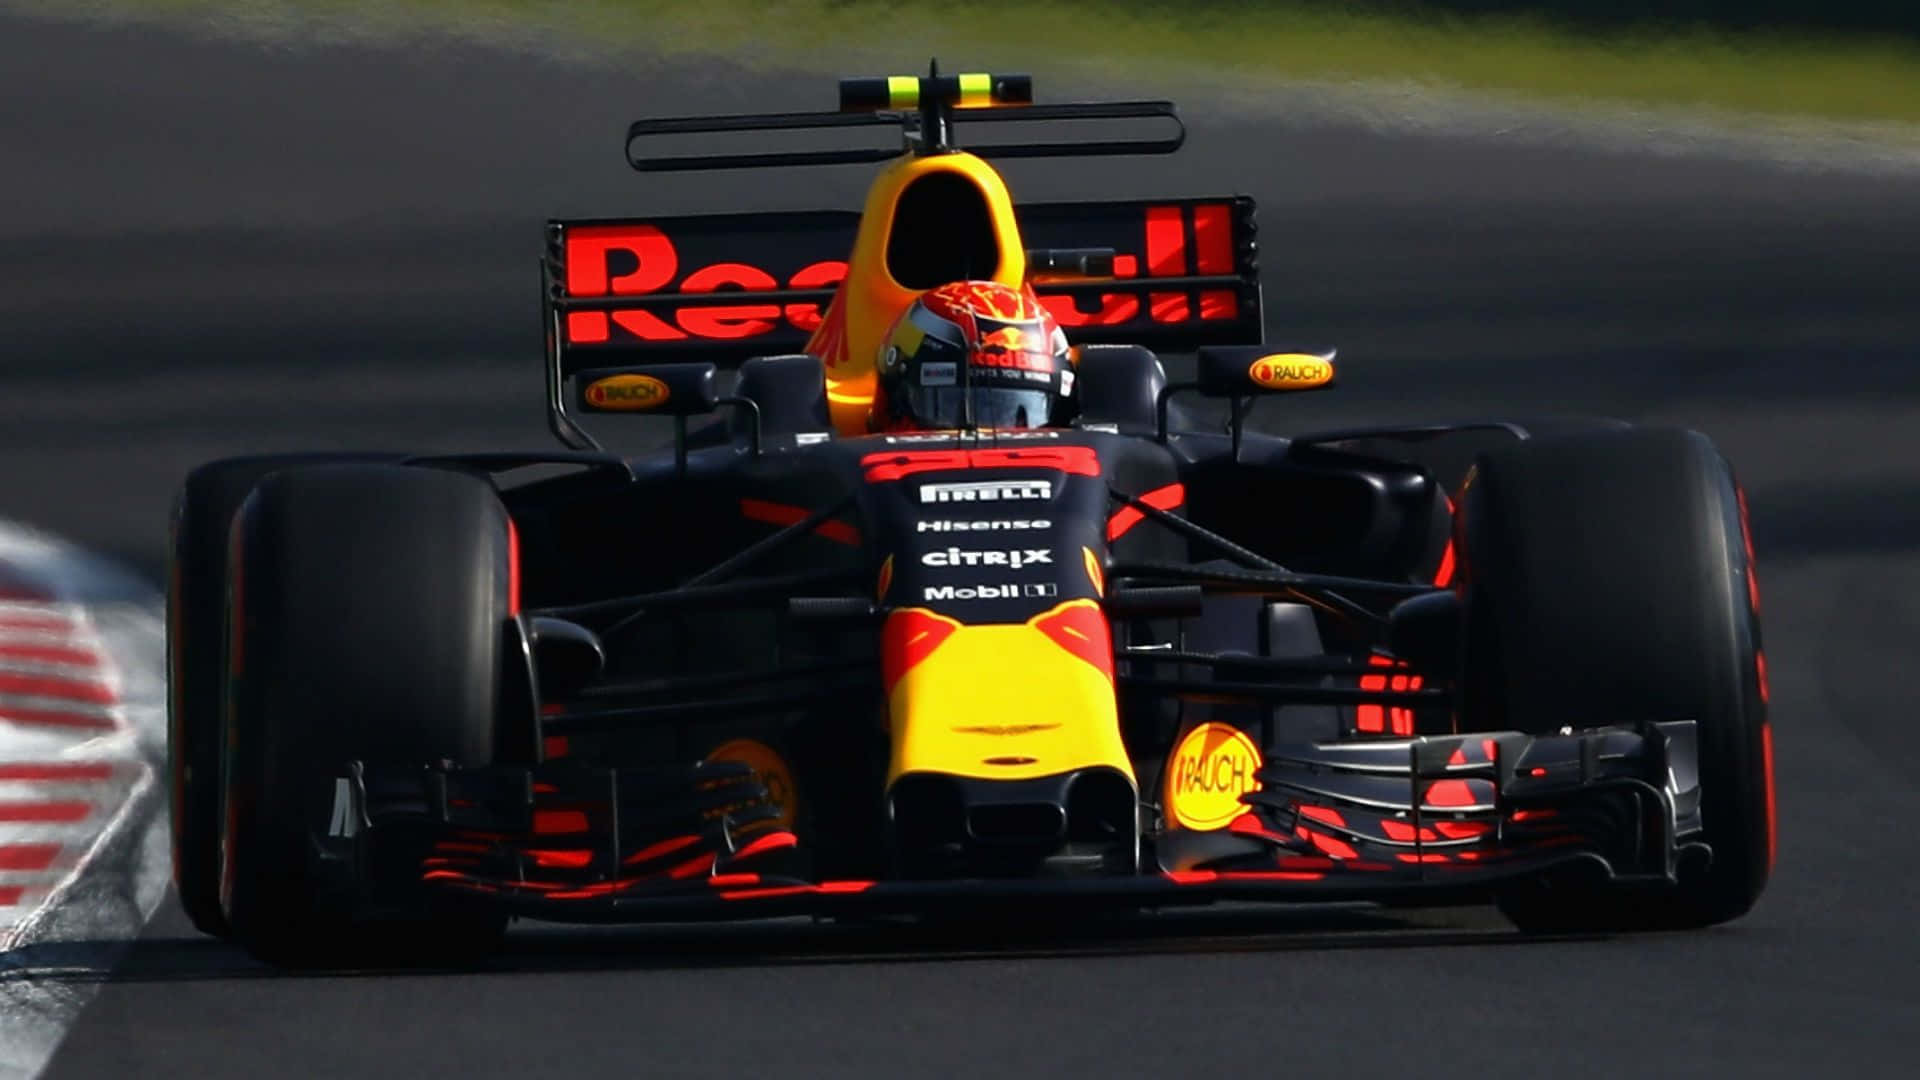 Max Verstappen racing in his Formula 1 car